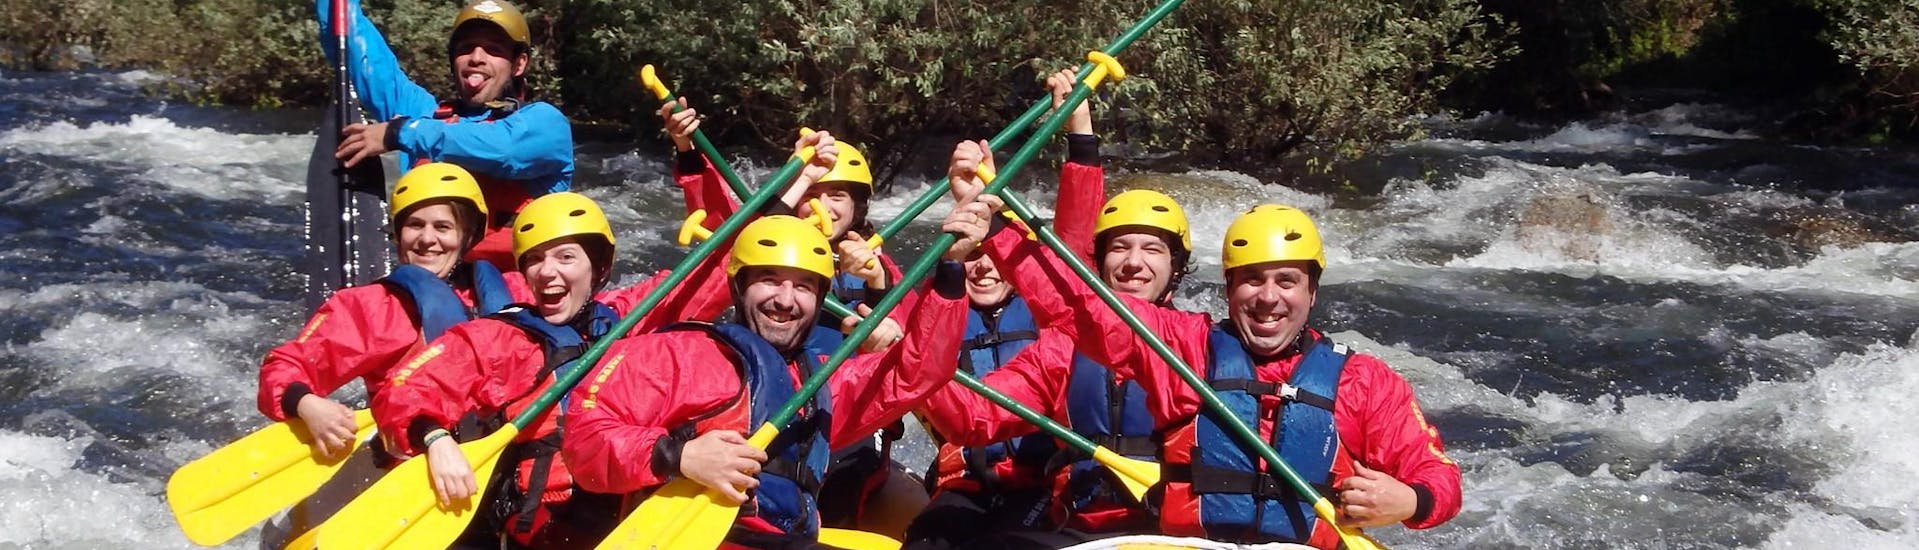 Durante el Rafting de Clase III en el Río Paiva en el Geoparque de Arouca, los participantes y el guía del Clube do Paiva posan para una foto mientras descienden el Río Paiva.